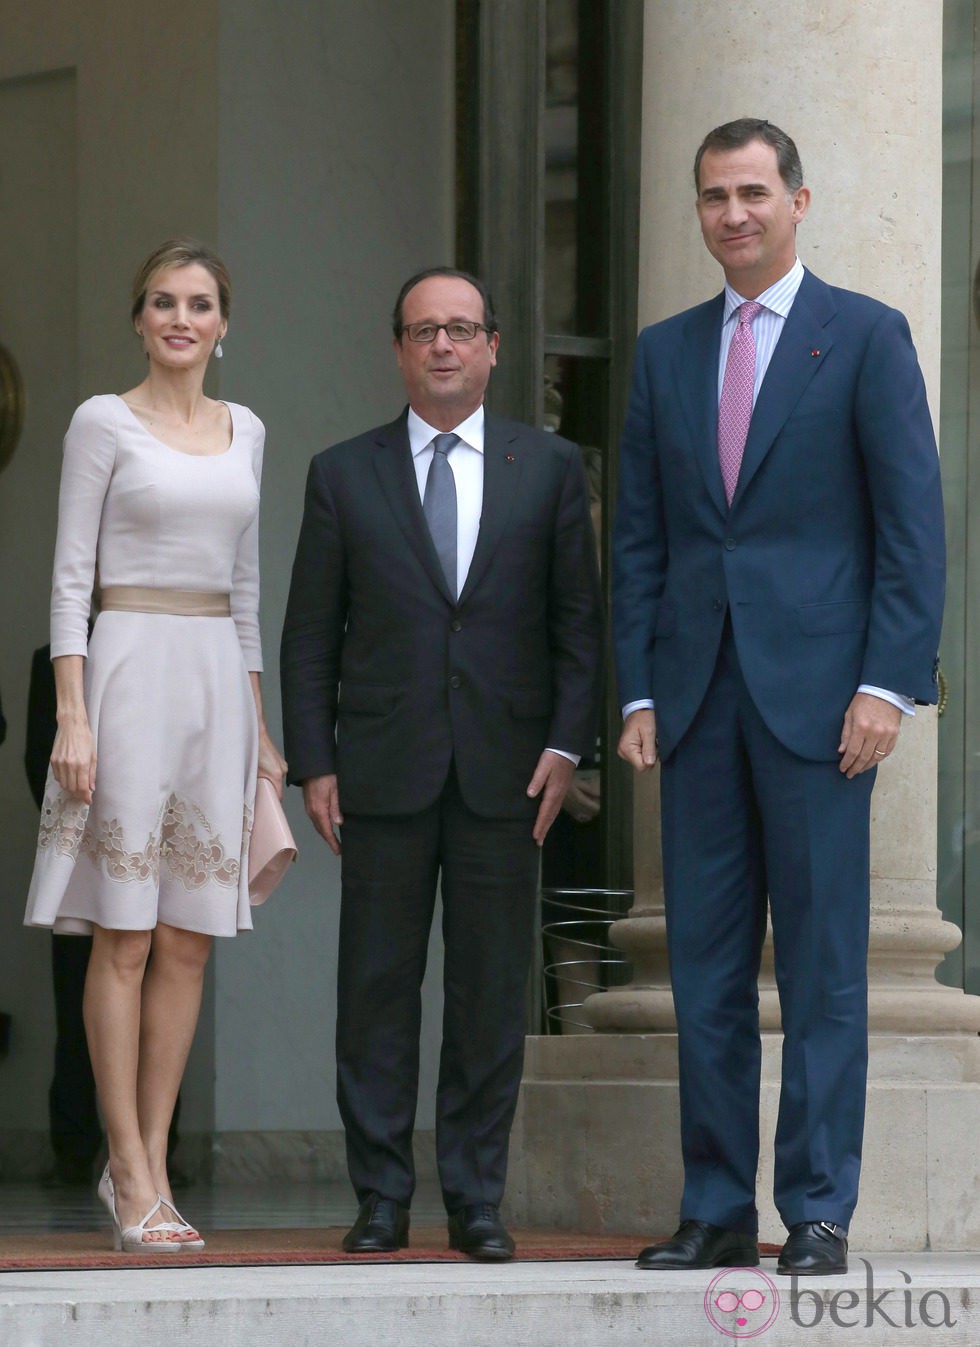 Los Reyes Felipe y Letizia con el presidente François Hollande en su visita de presentación a Francia